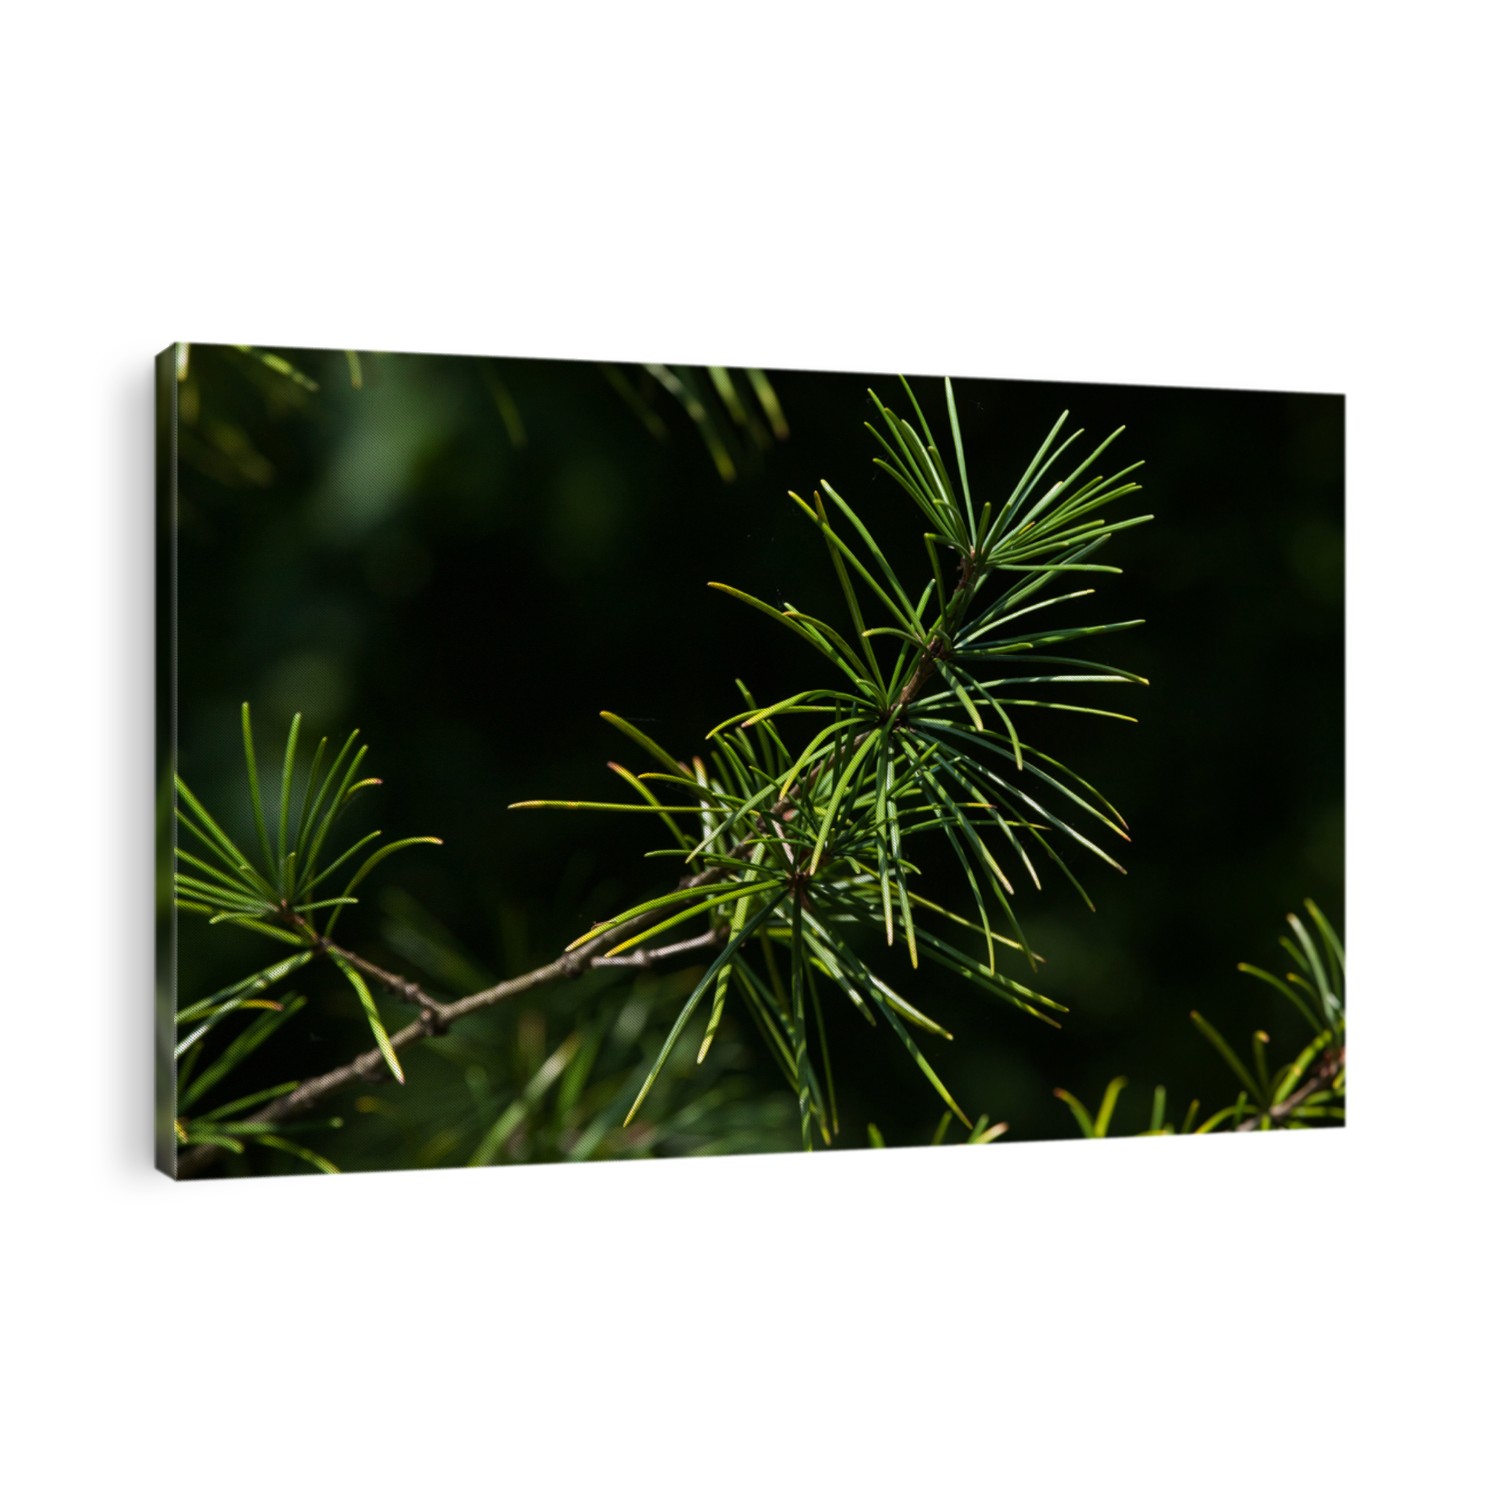 Japanese umbrella pine (Sciadopitys verticillata), also known as the koyamaki. Conifer plant.